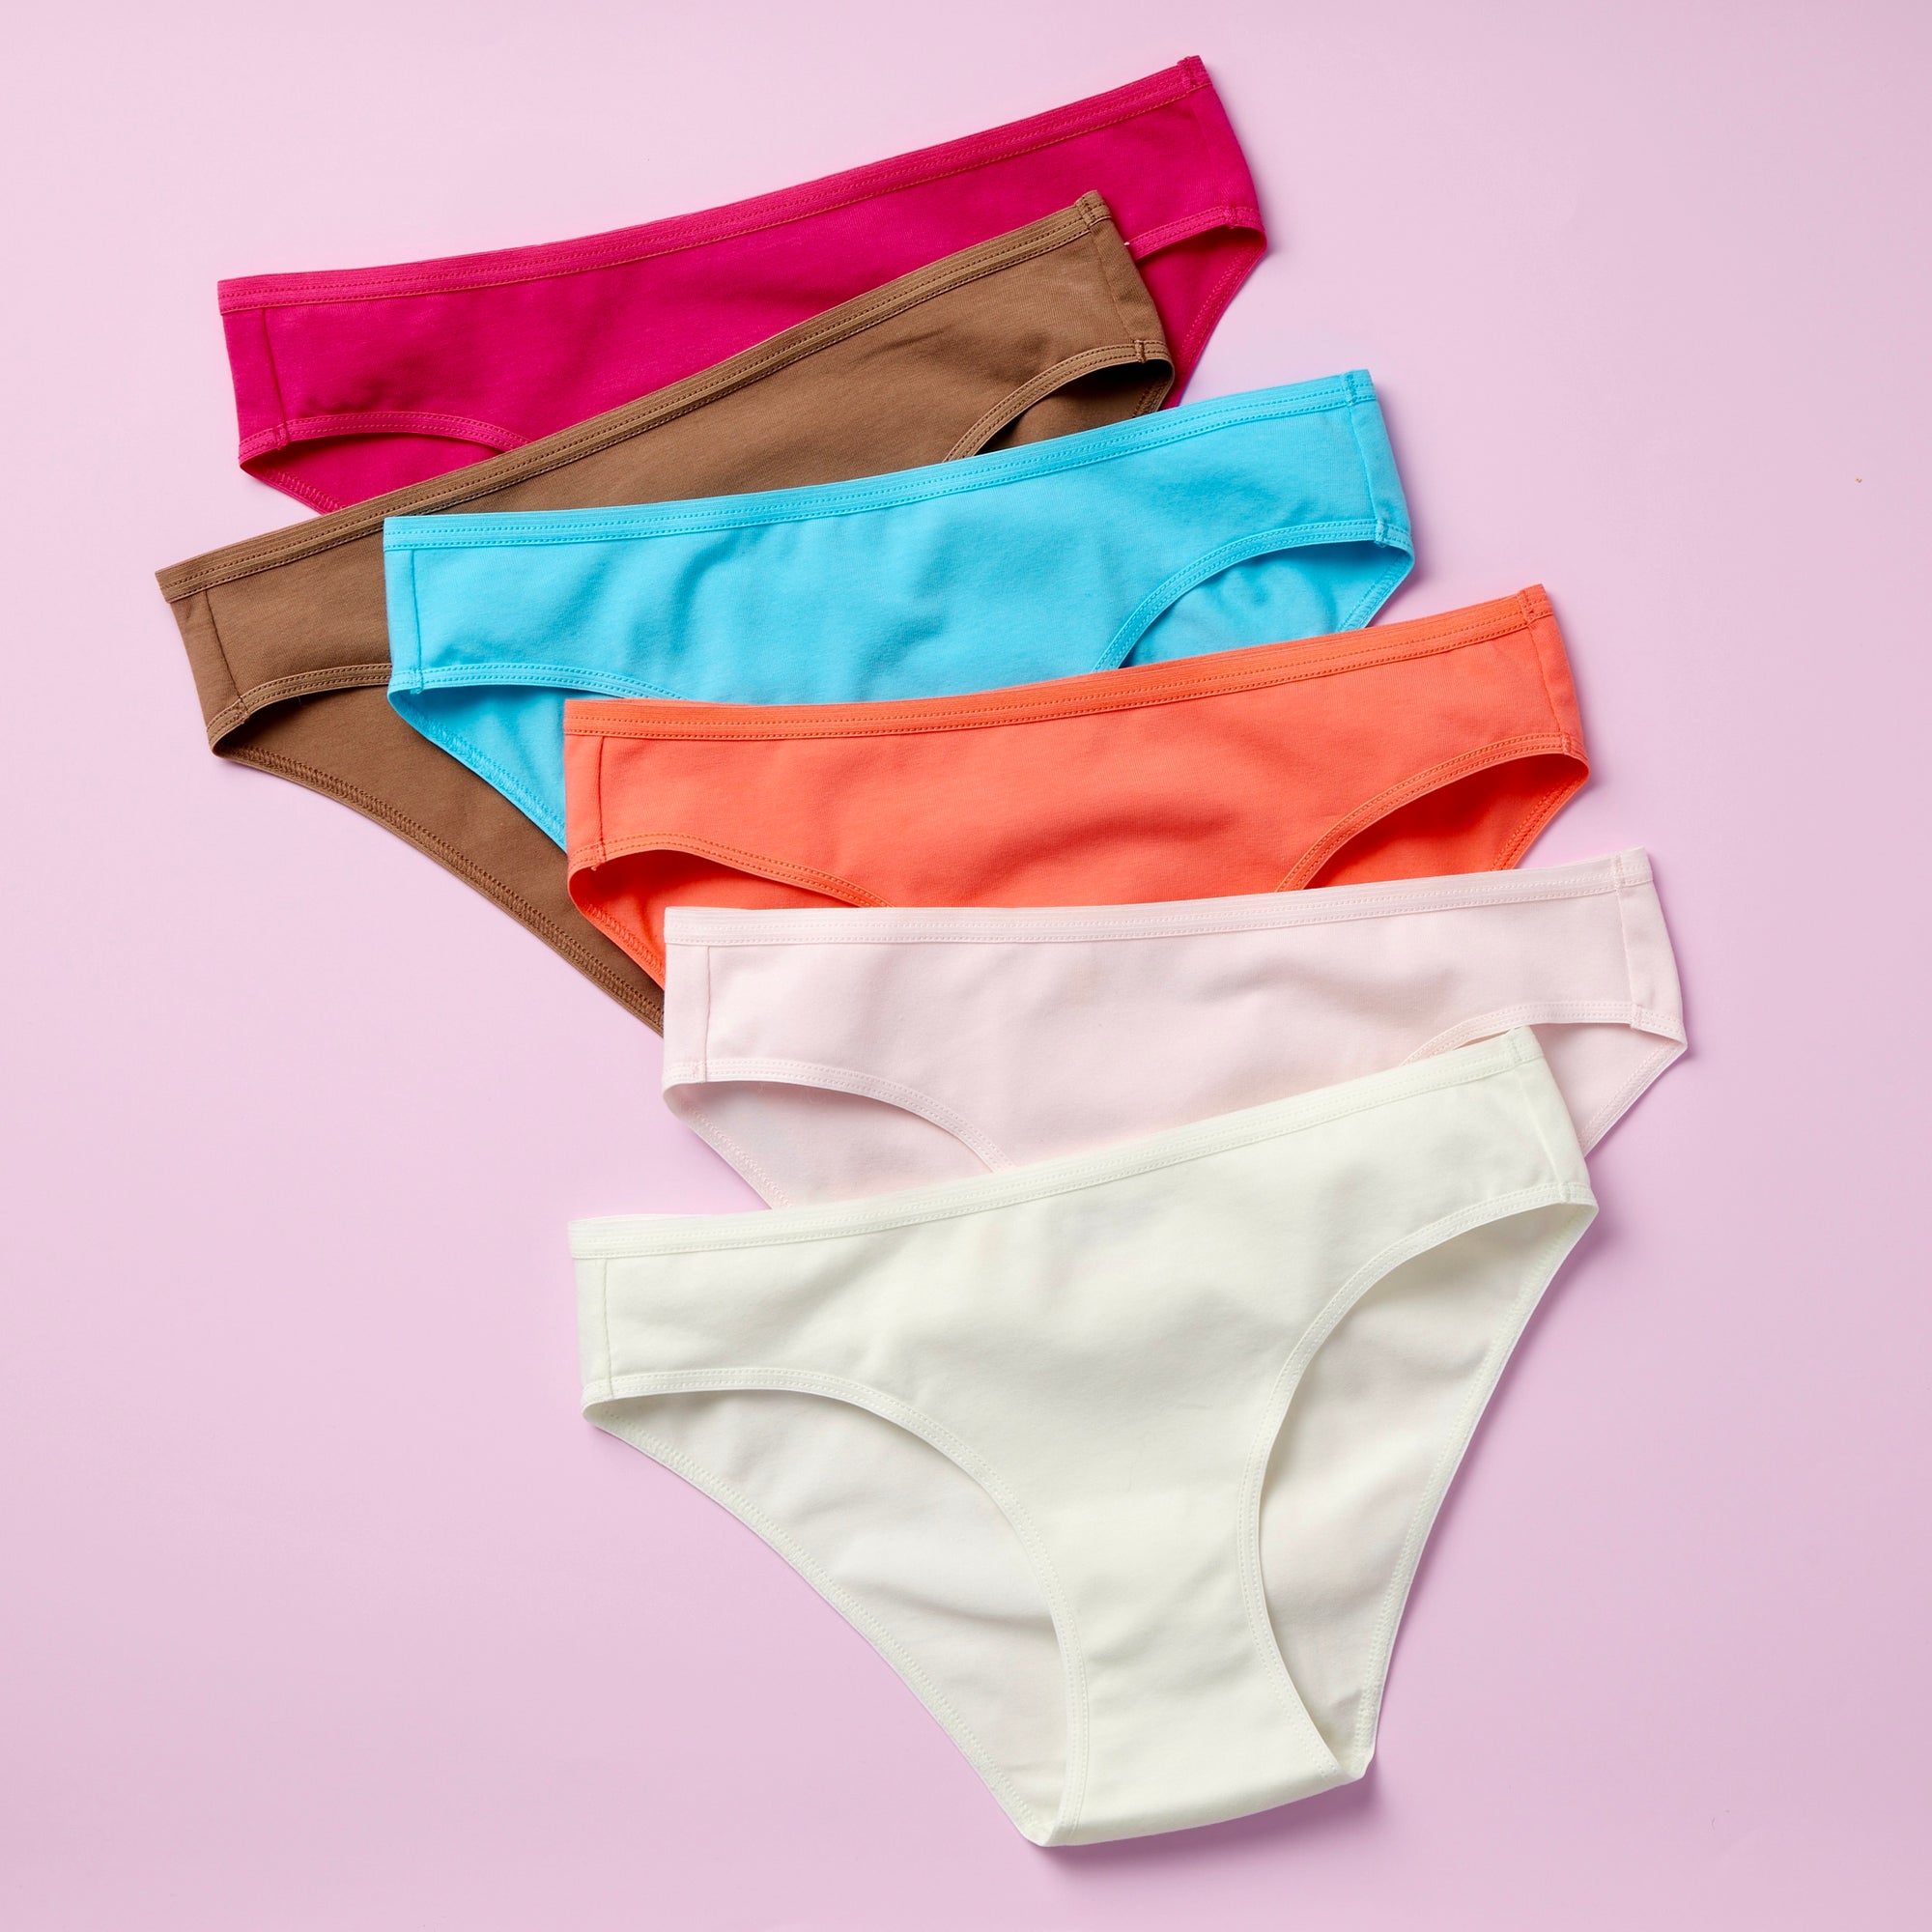 Girls Underwear - The BEST Cotton and Seamless underwear for teens